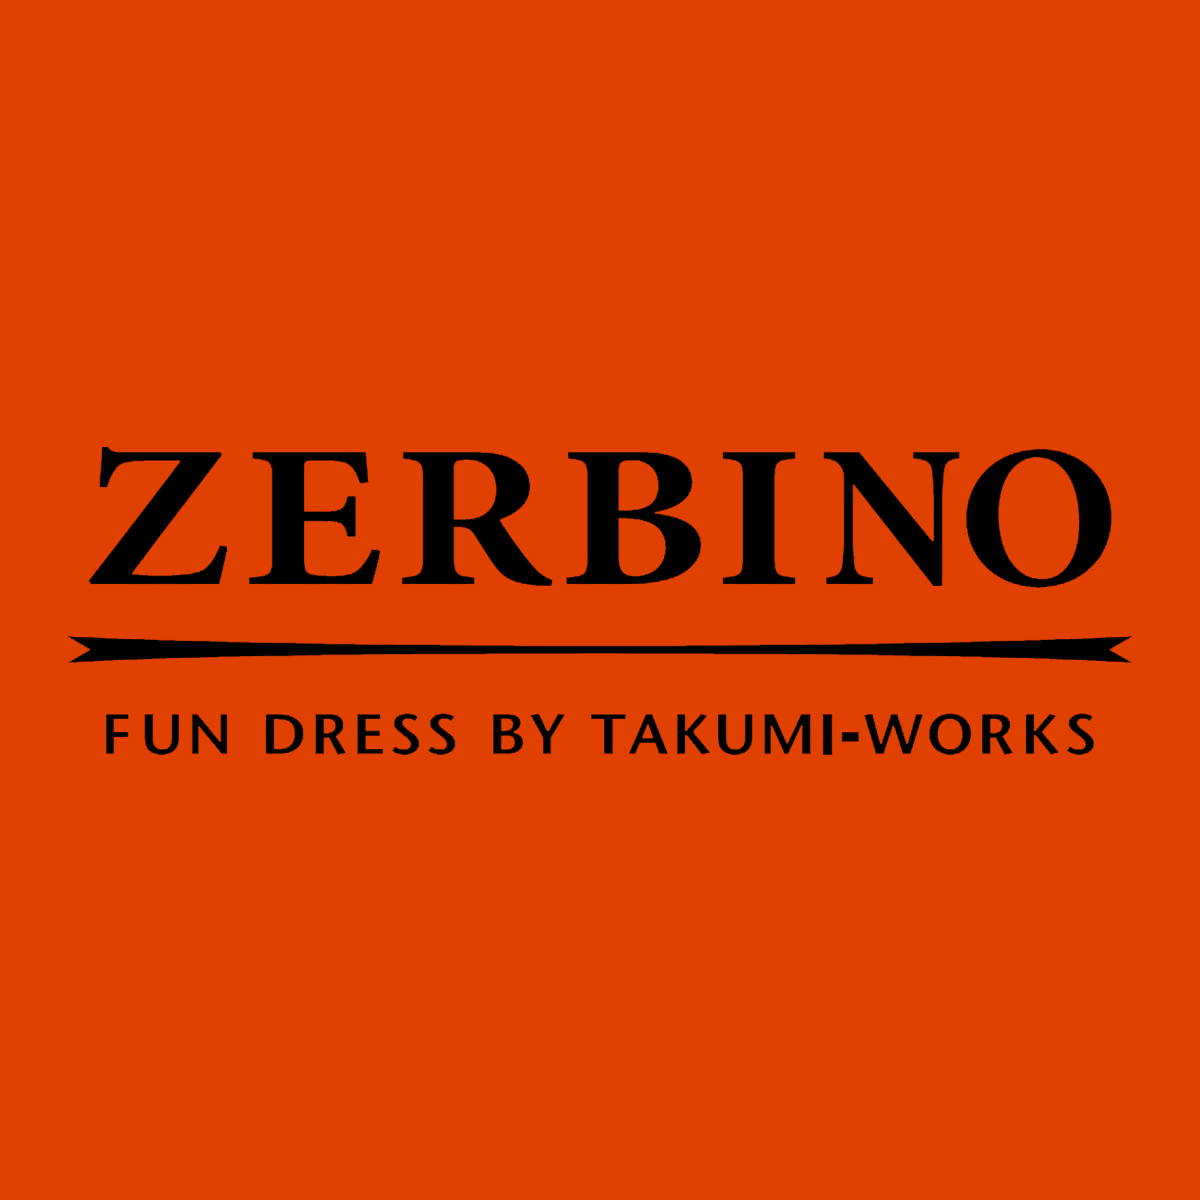 オーダースーツ【ZERBINO】東京/新宿・虎ノ門・銀座